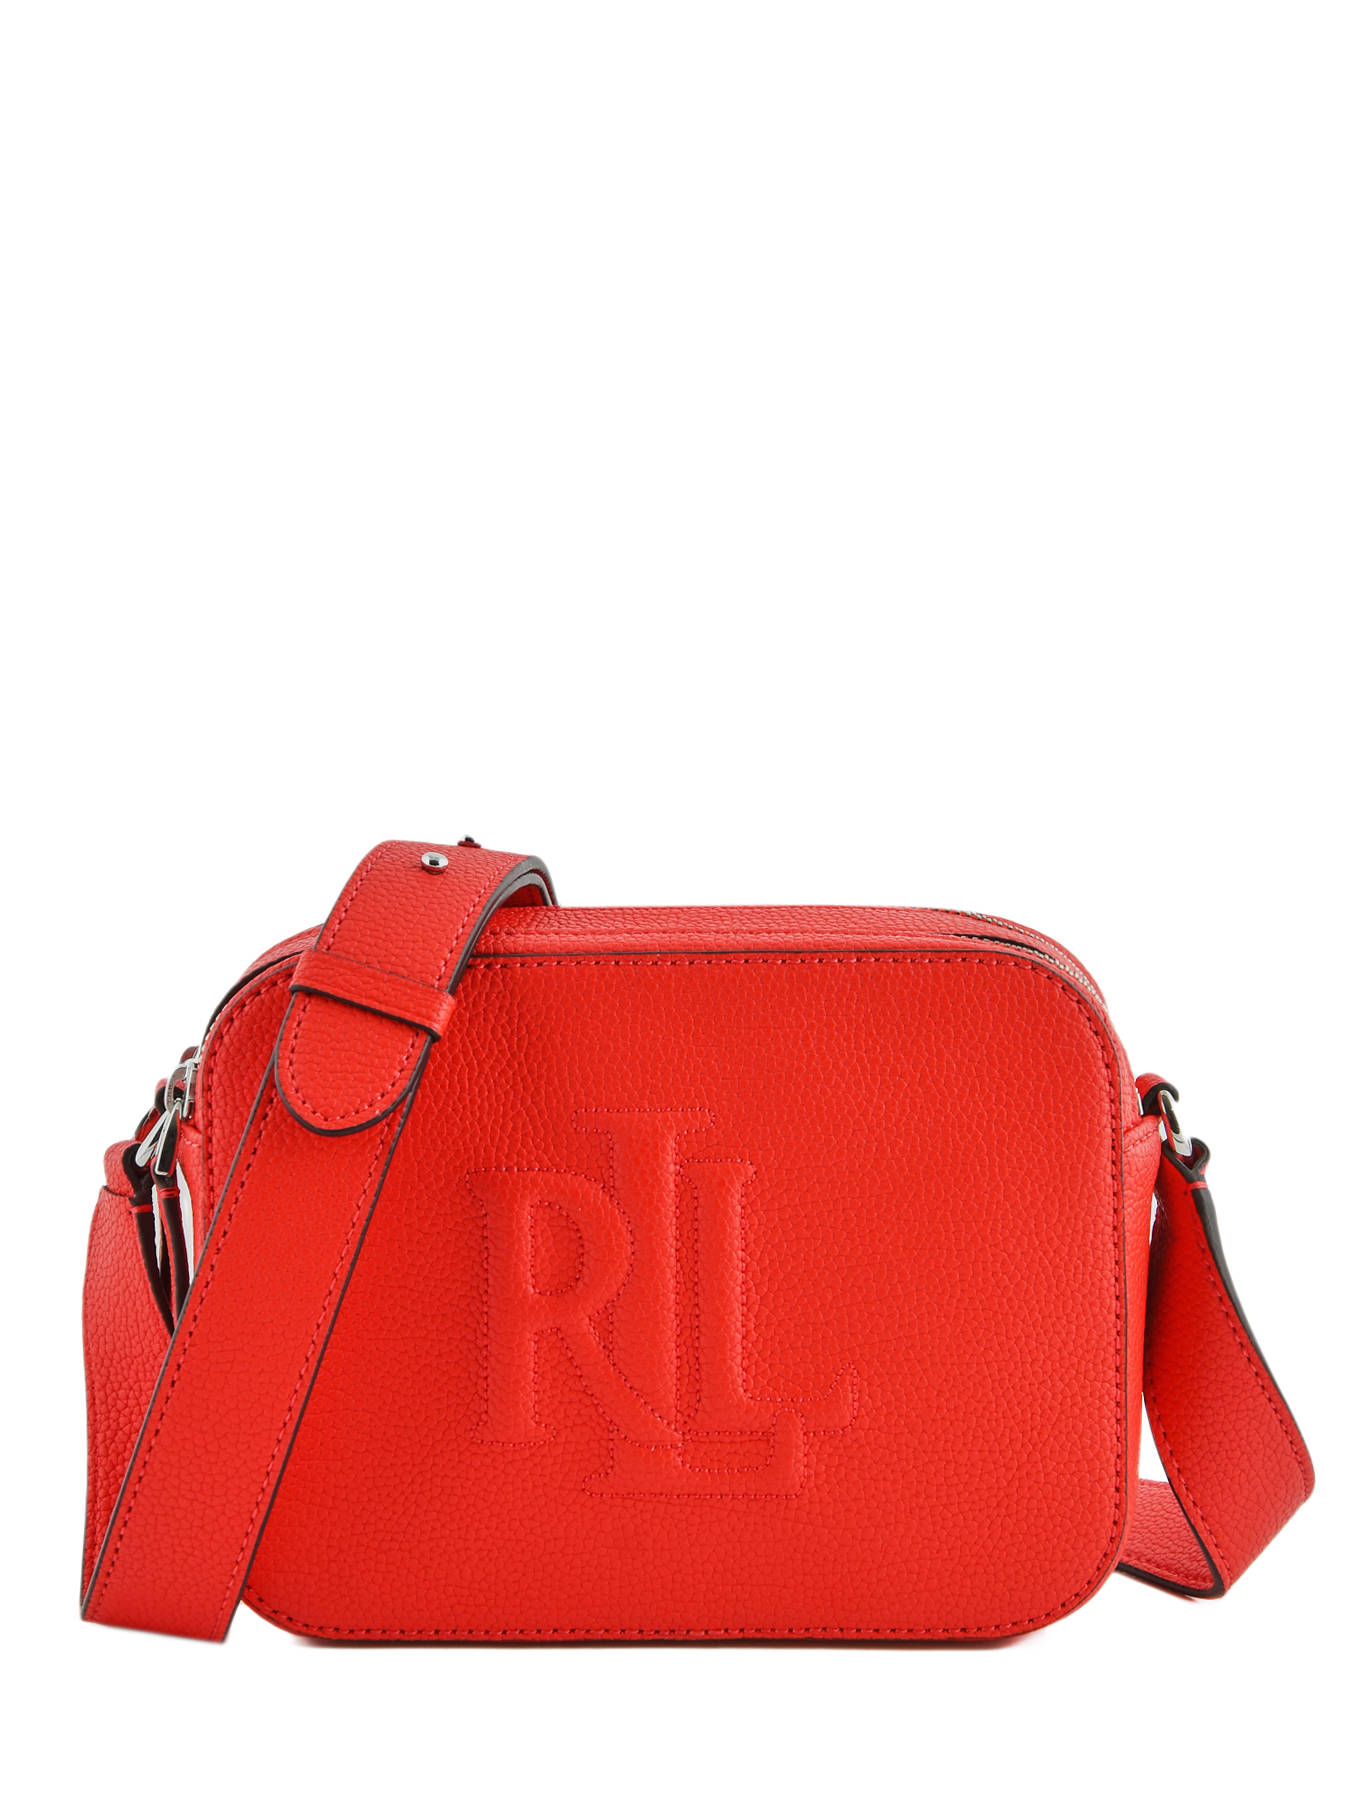 ralph lauren red crossbody bag